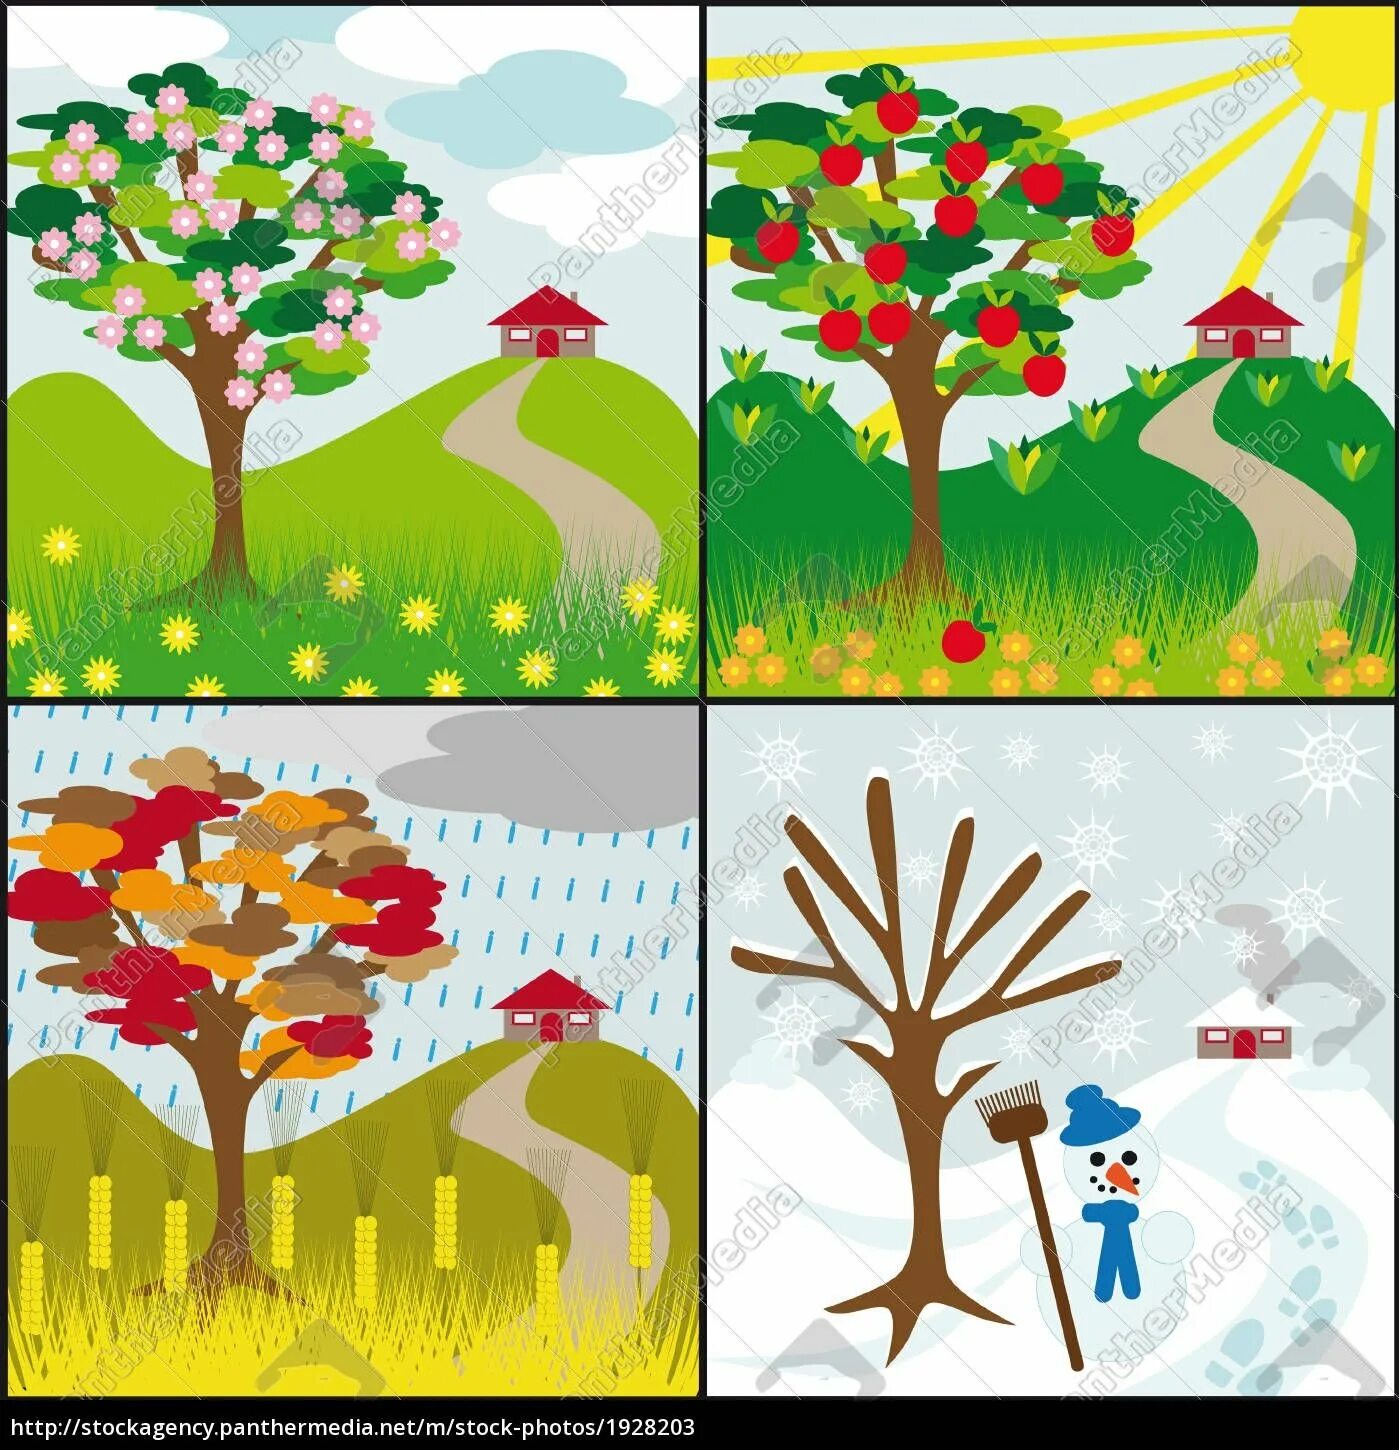 Яблоня в разные времена года. Иллюстрации с изображением времен года. Пейзажи по временам года для дошкольников. Четыре времени года рисунок.